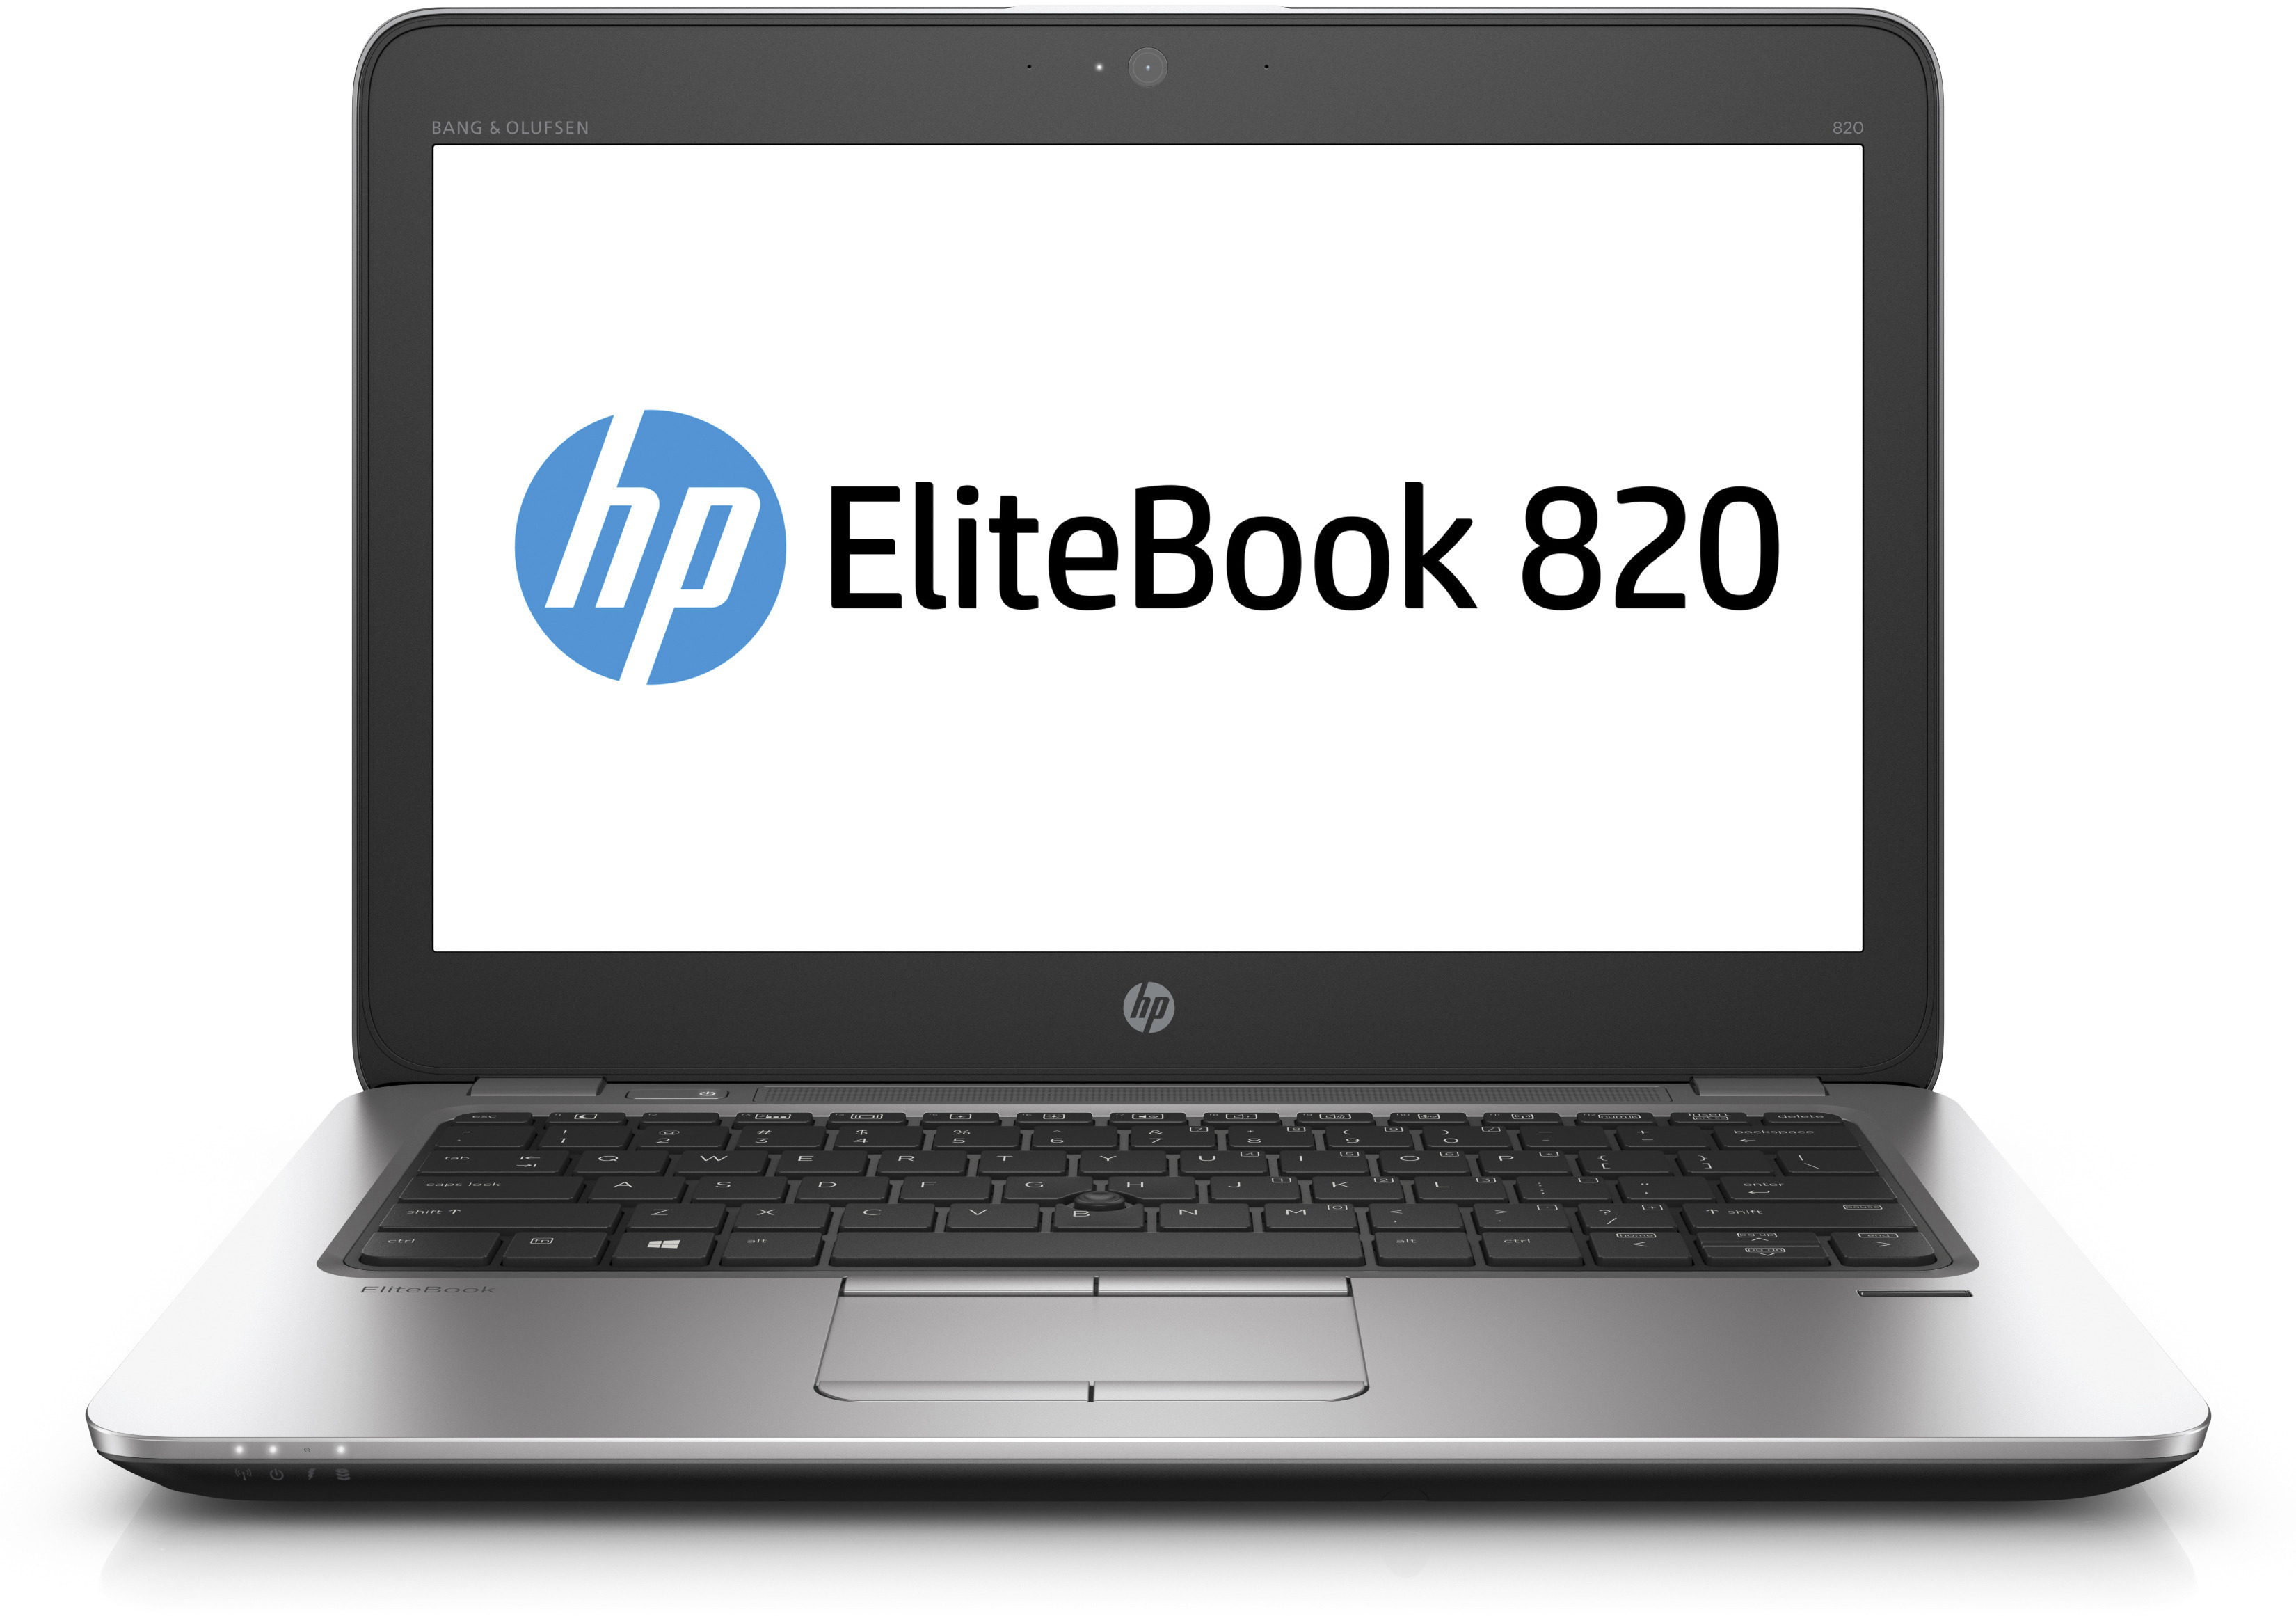 HP EliteBook 820 G3 Core i5, Core i7 màn hình 12.5inch Windows 10, Weight 1.38 kg